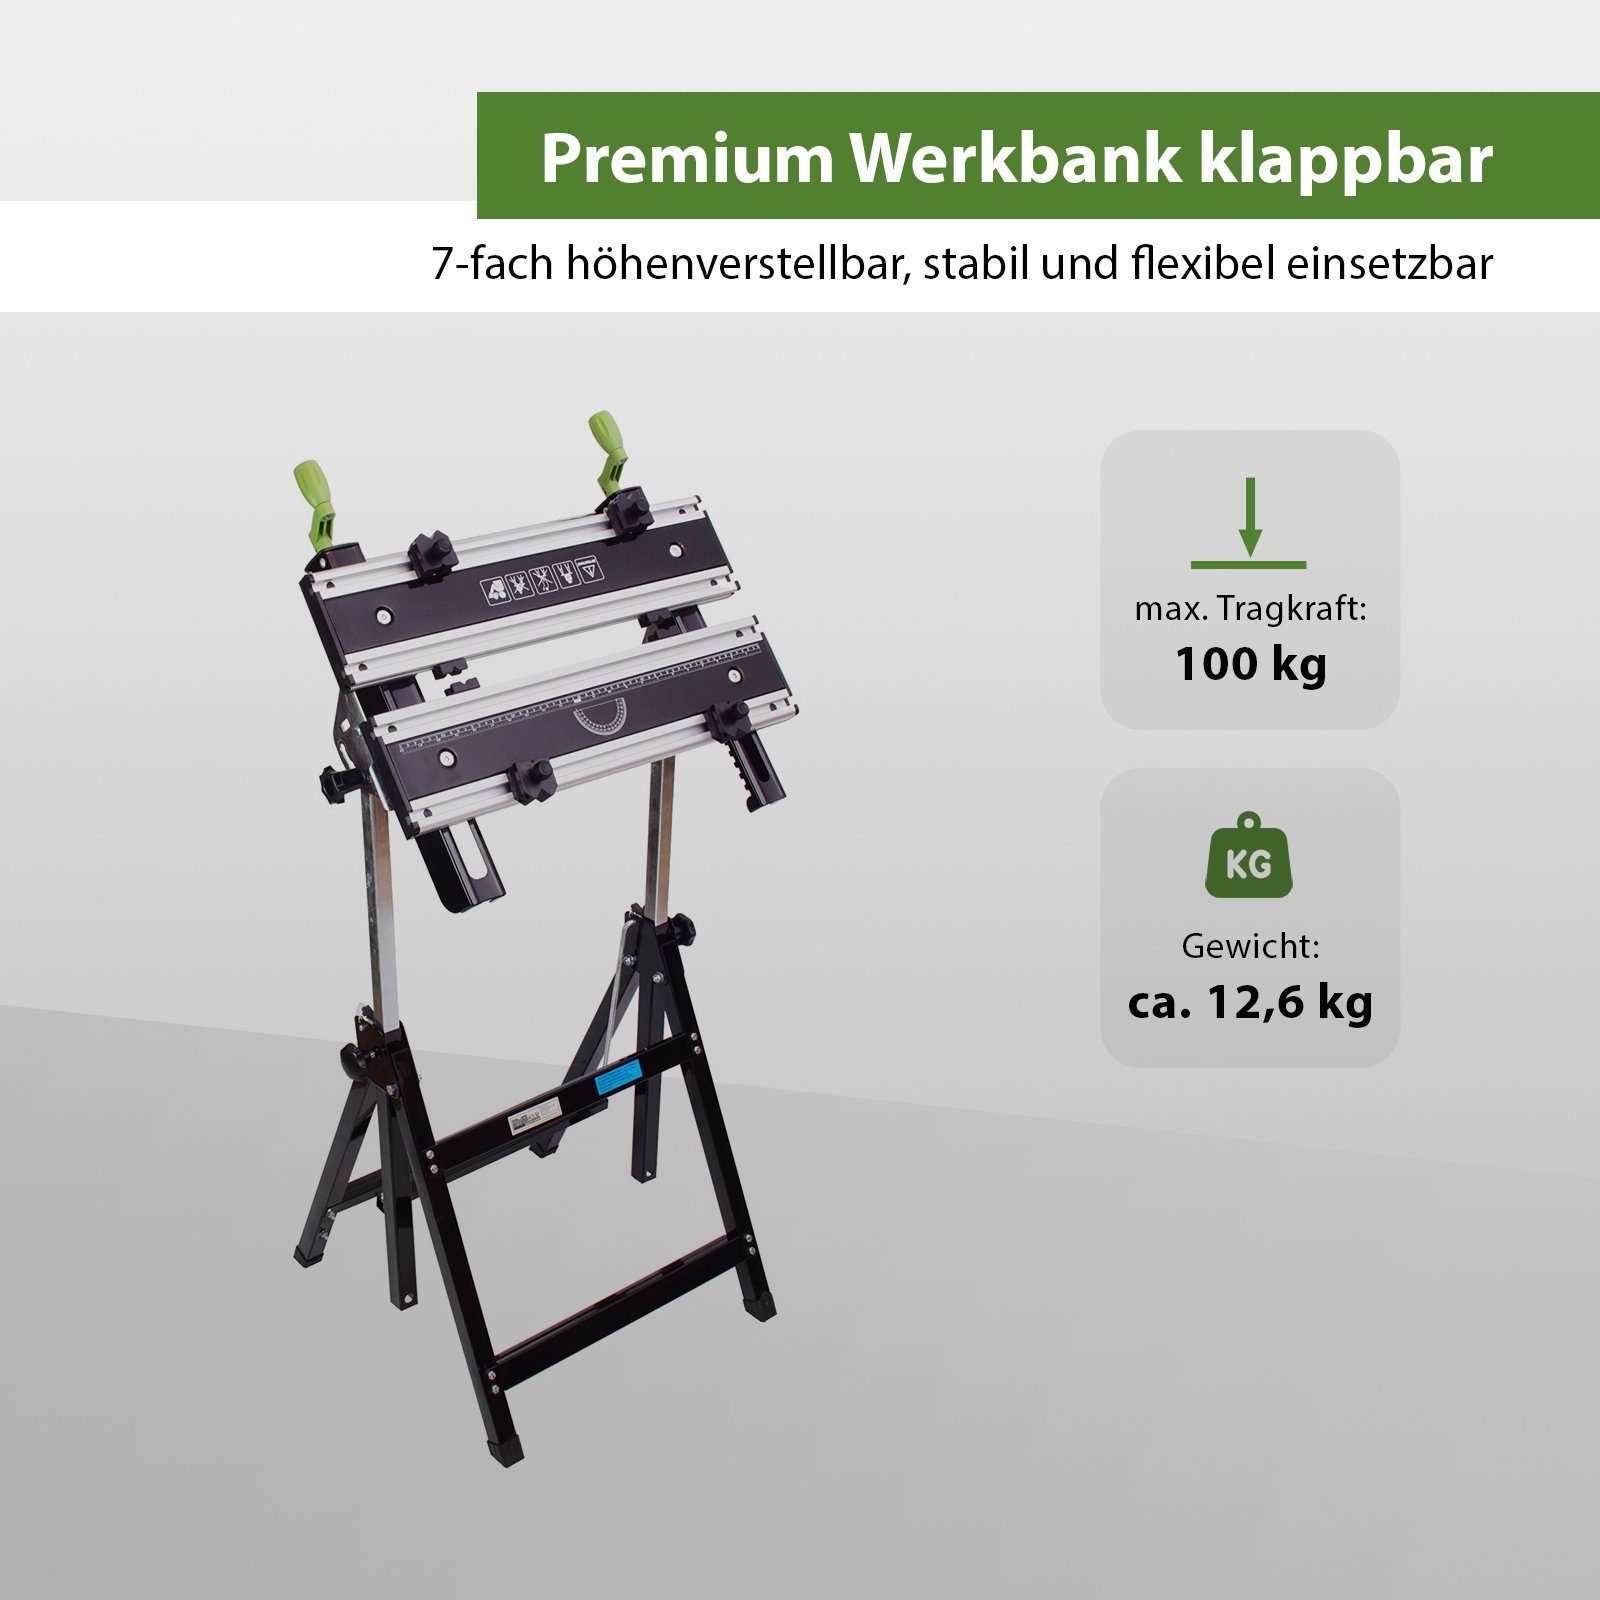 TRUTZHOLM Werkbank Profi Werkbank Premium höhenverstellbar Werktisch Metall klappbar Alu, (Packung)